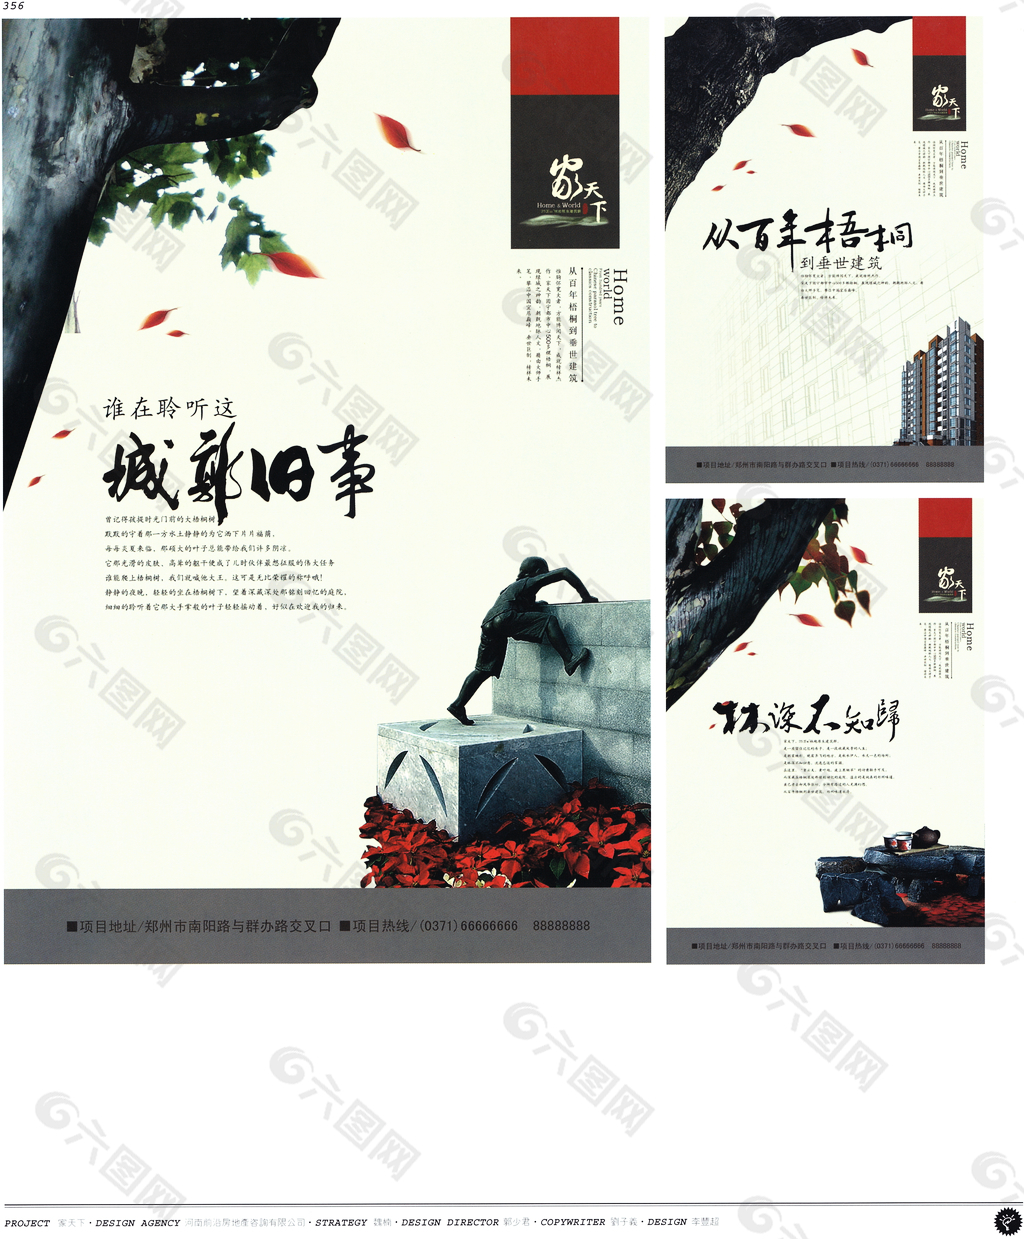 中国房地产广告年鉴 第二册 创意设计_0338